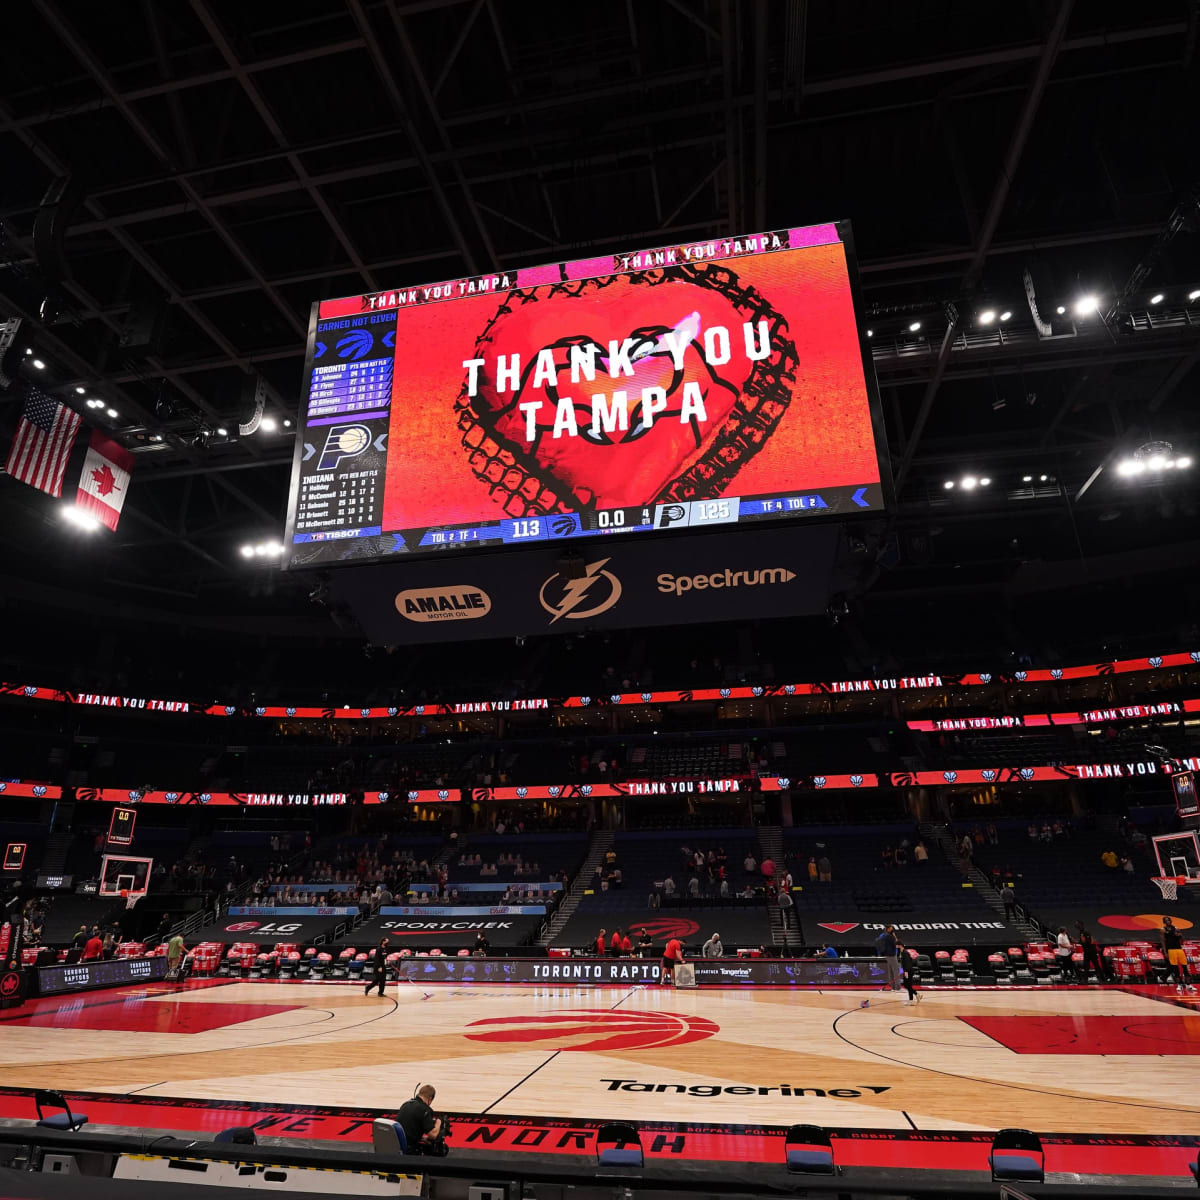 Toronto Raptors staying in Tampa for remainder of NBA season